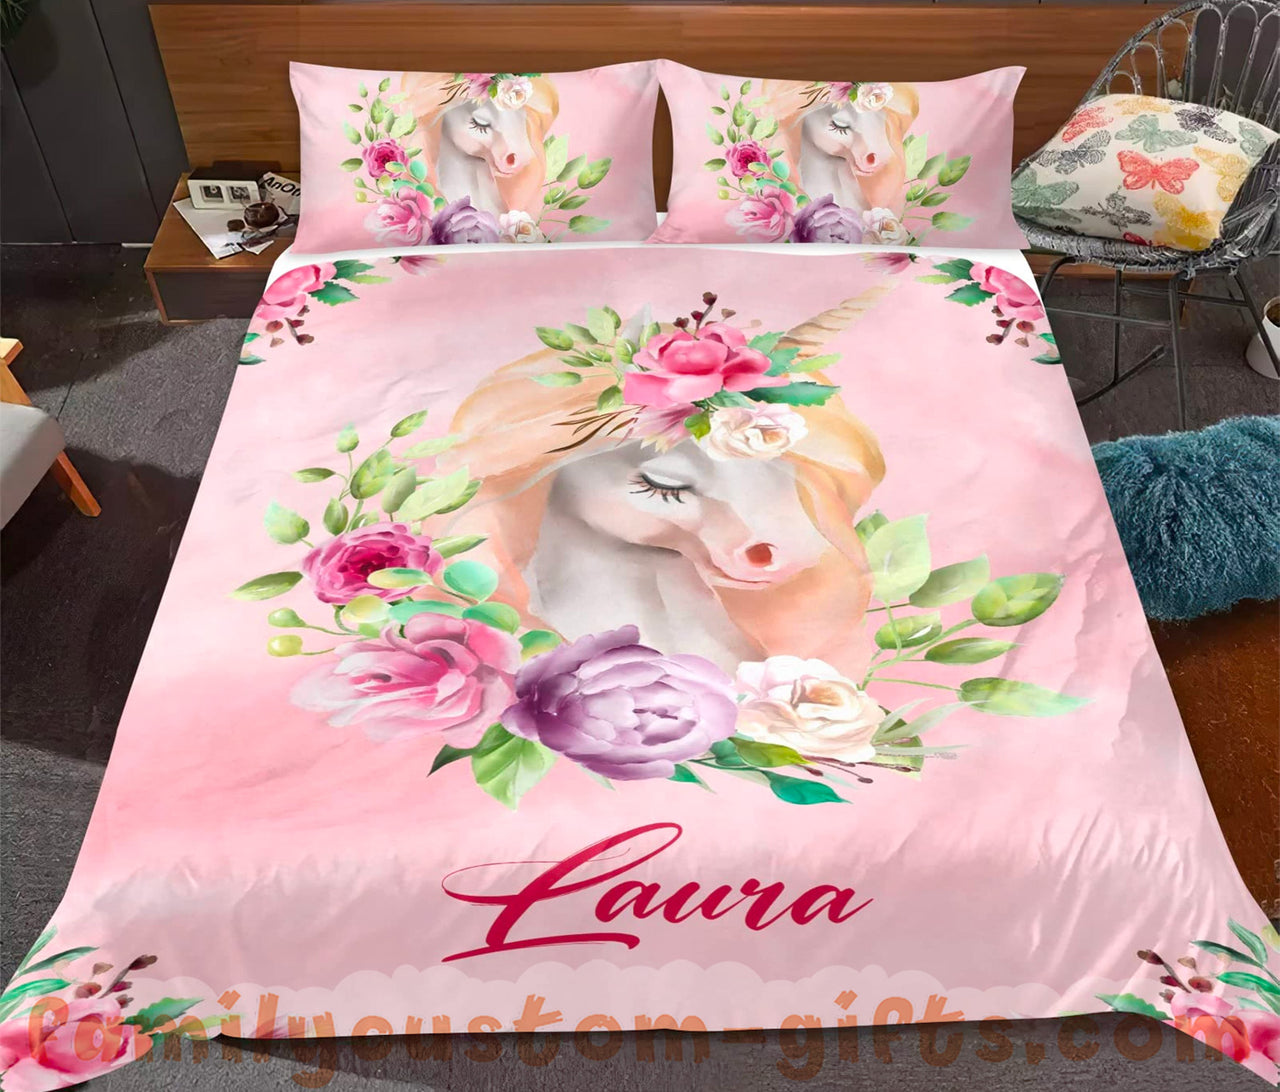 Custom Quilt Sets Cute Unicorn Flower Premium Quilt Bedding for Boys Girls Men Women